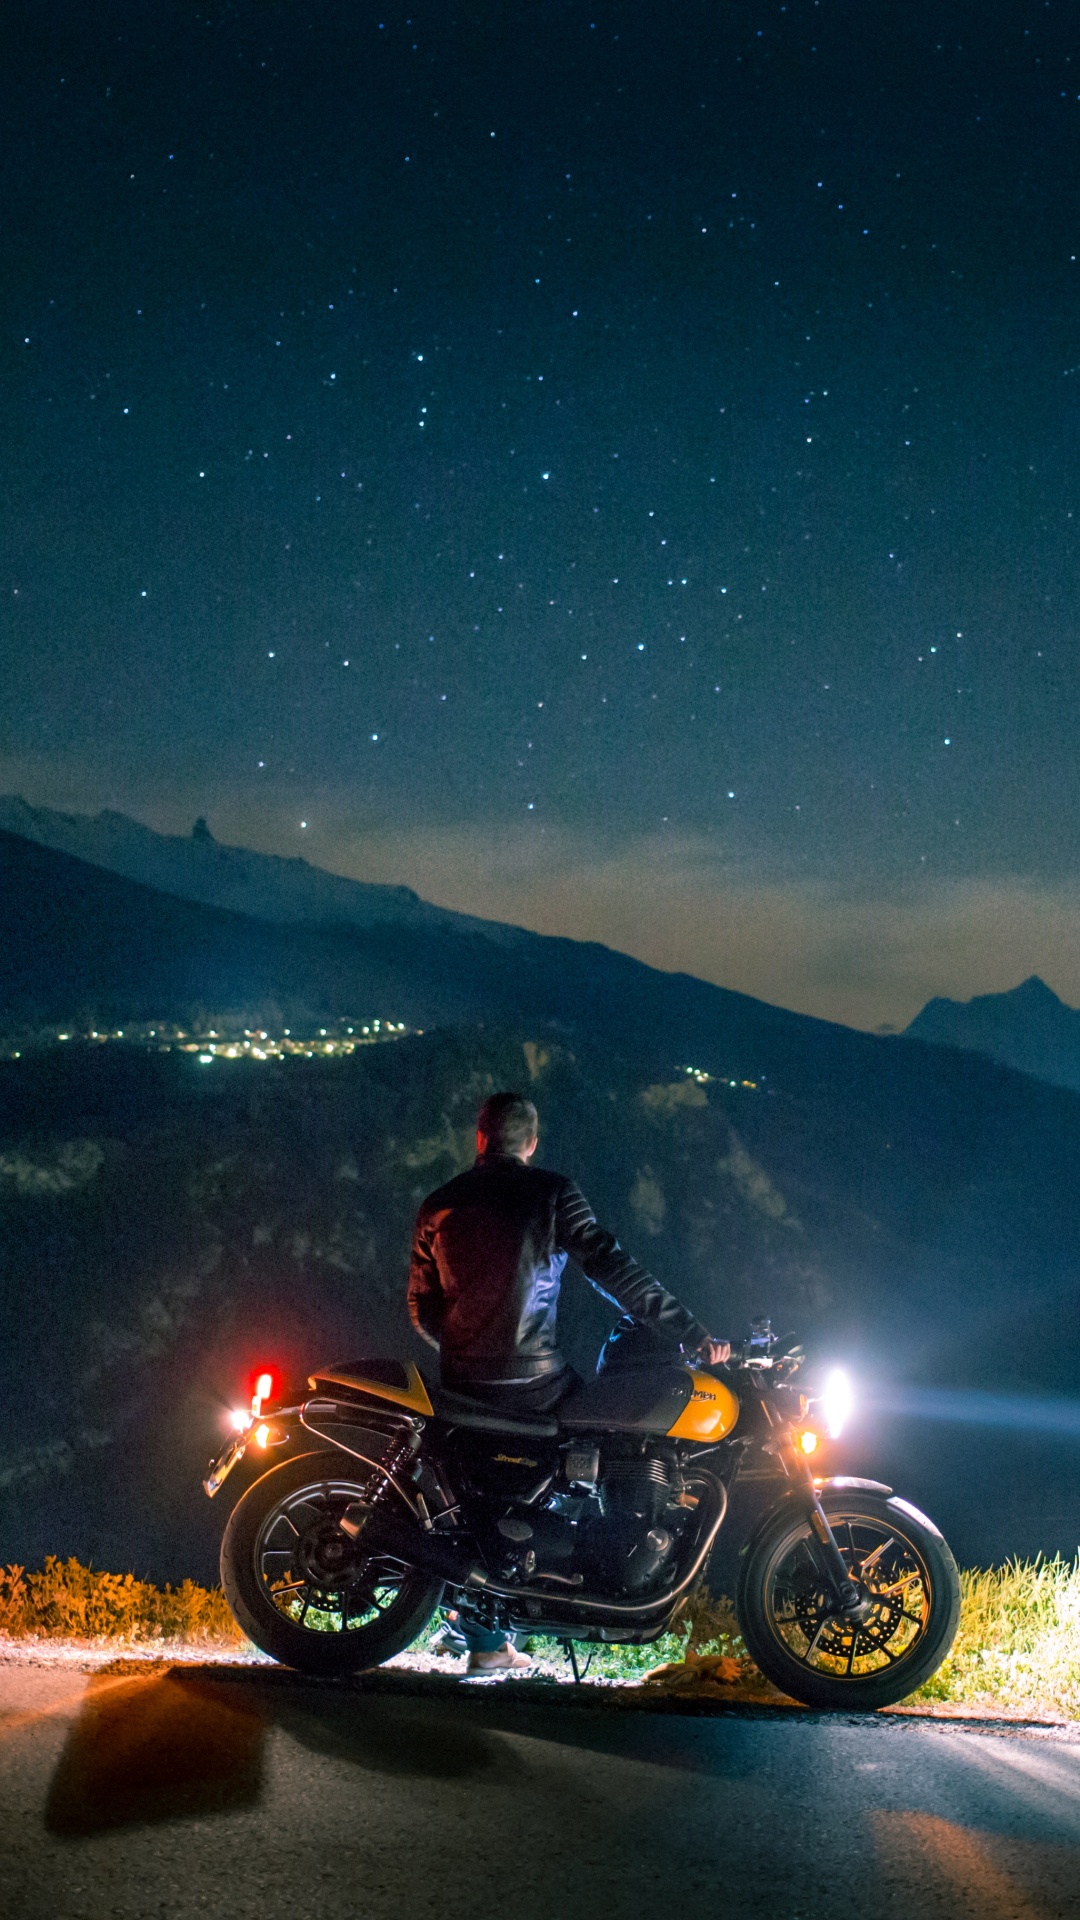 Hombre en Motocicleta en la Carretera Durante la Noche. Wallpaper in 1080x1920 Resolution